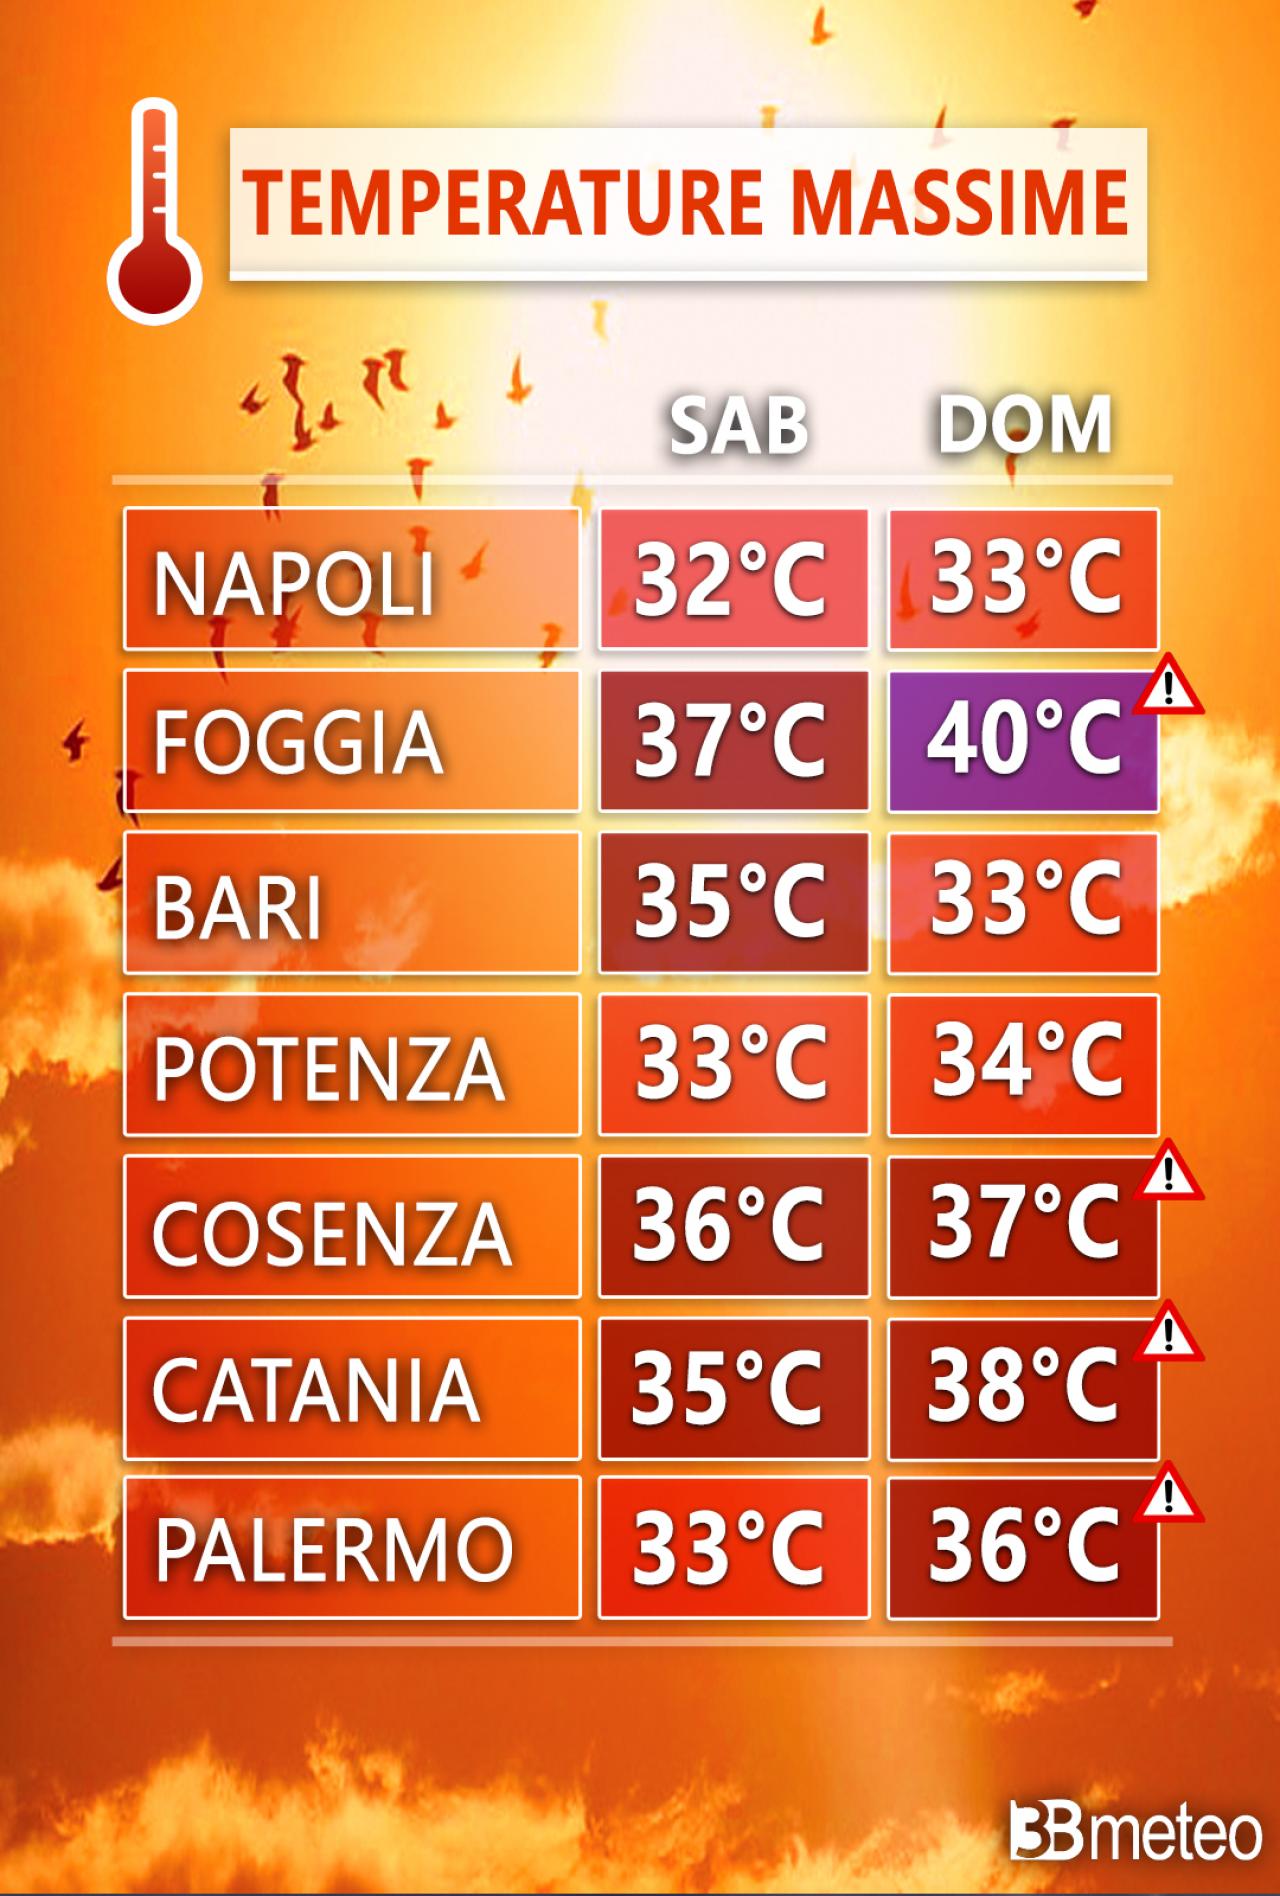 Le temperature massime attese in alcune delle principali città del Sud Italia nel corso del weekend